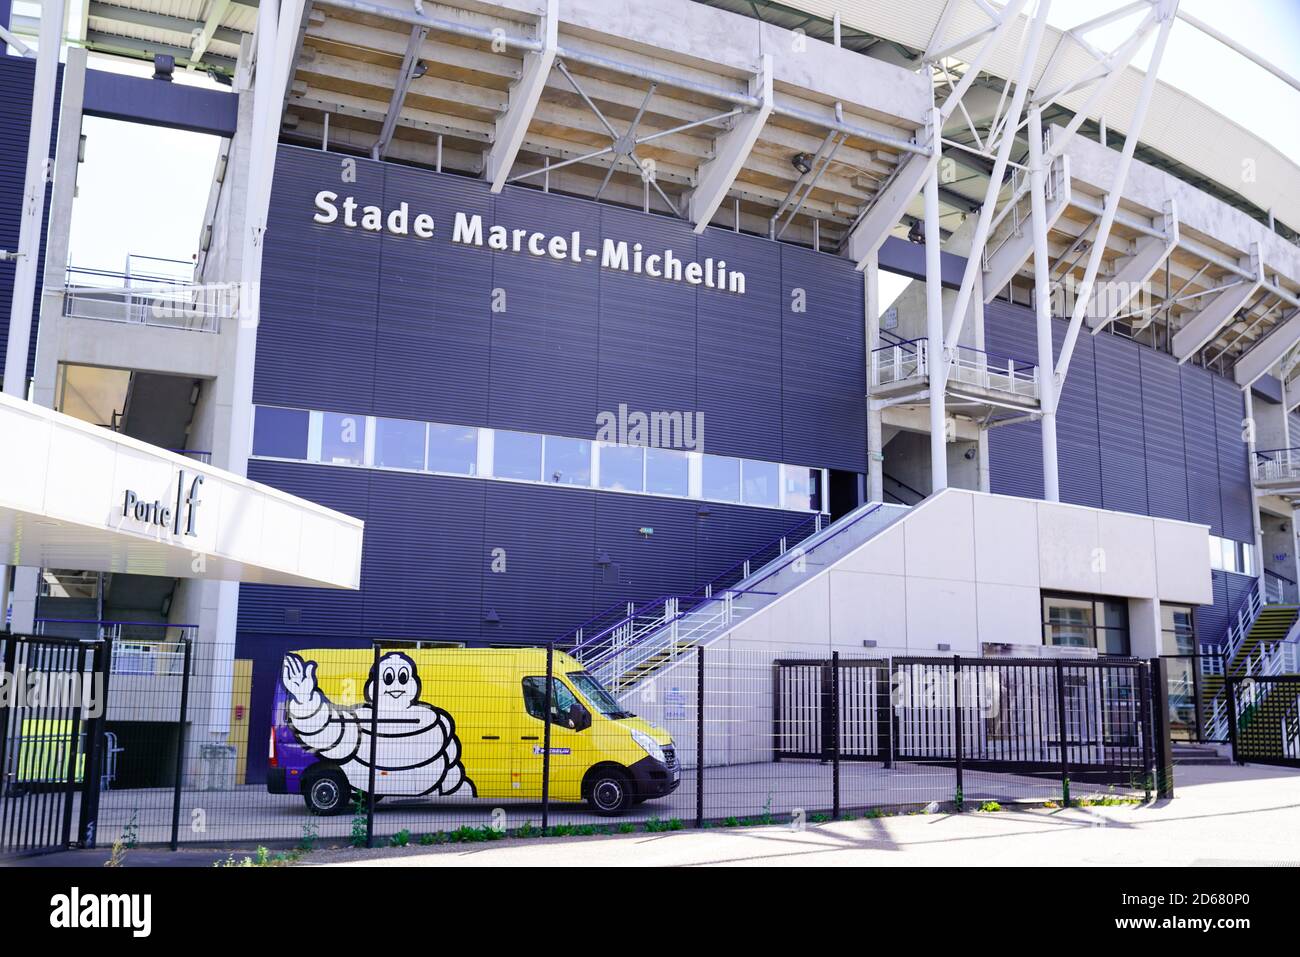 Stade marcel michelin immagini e fotografie stock ad alta risoluzione -  Alamy